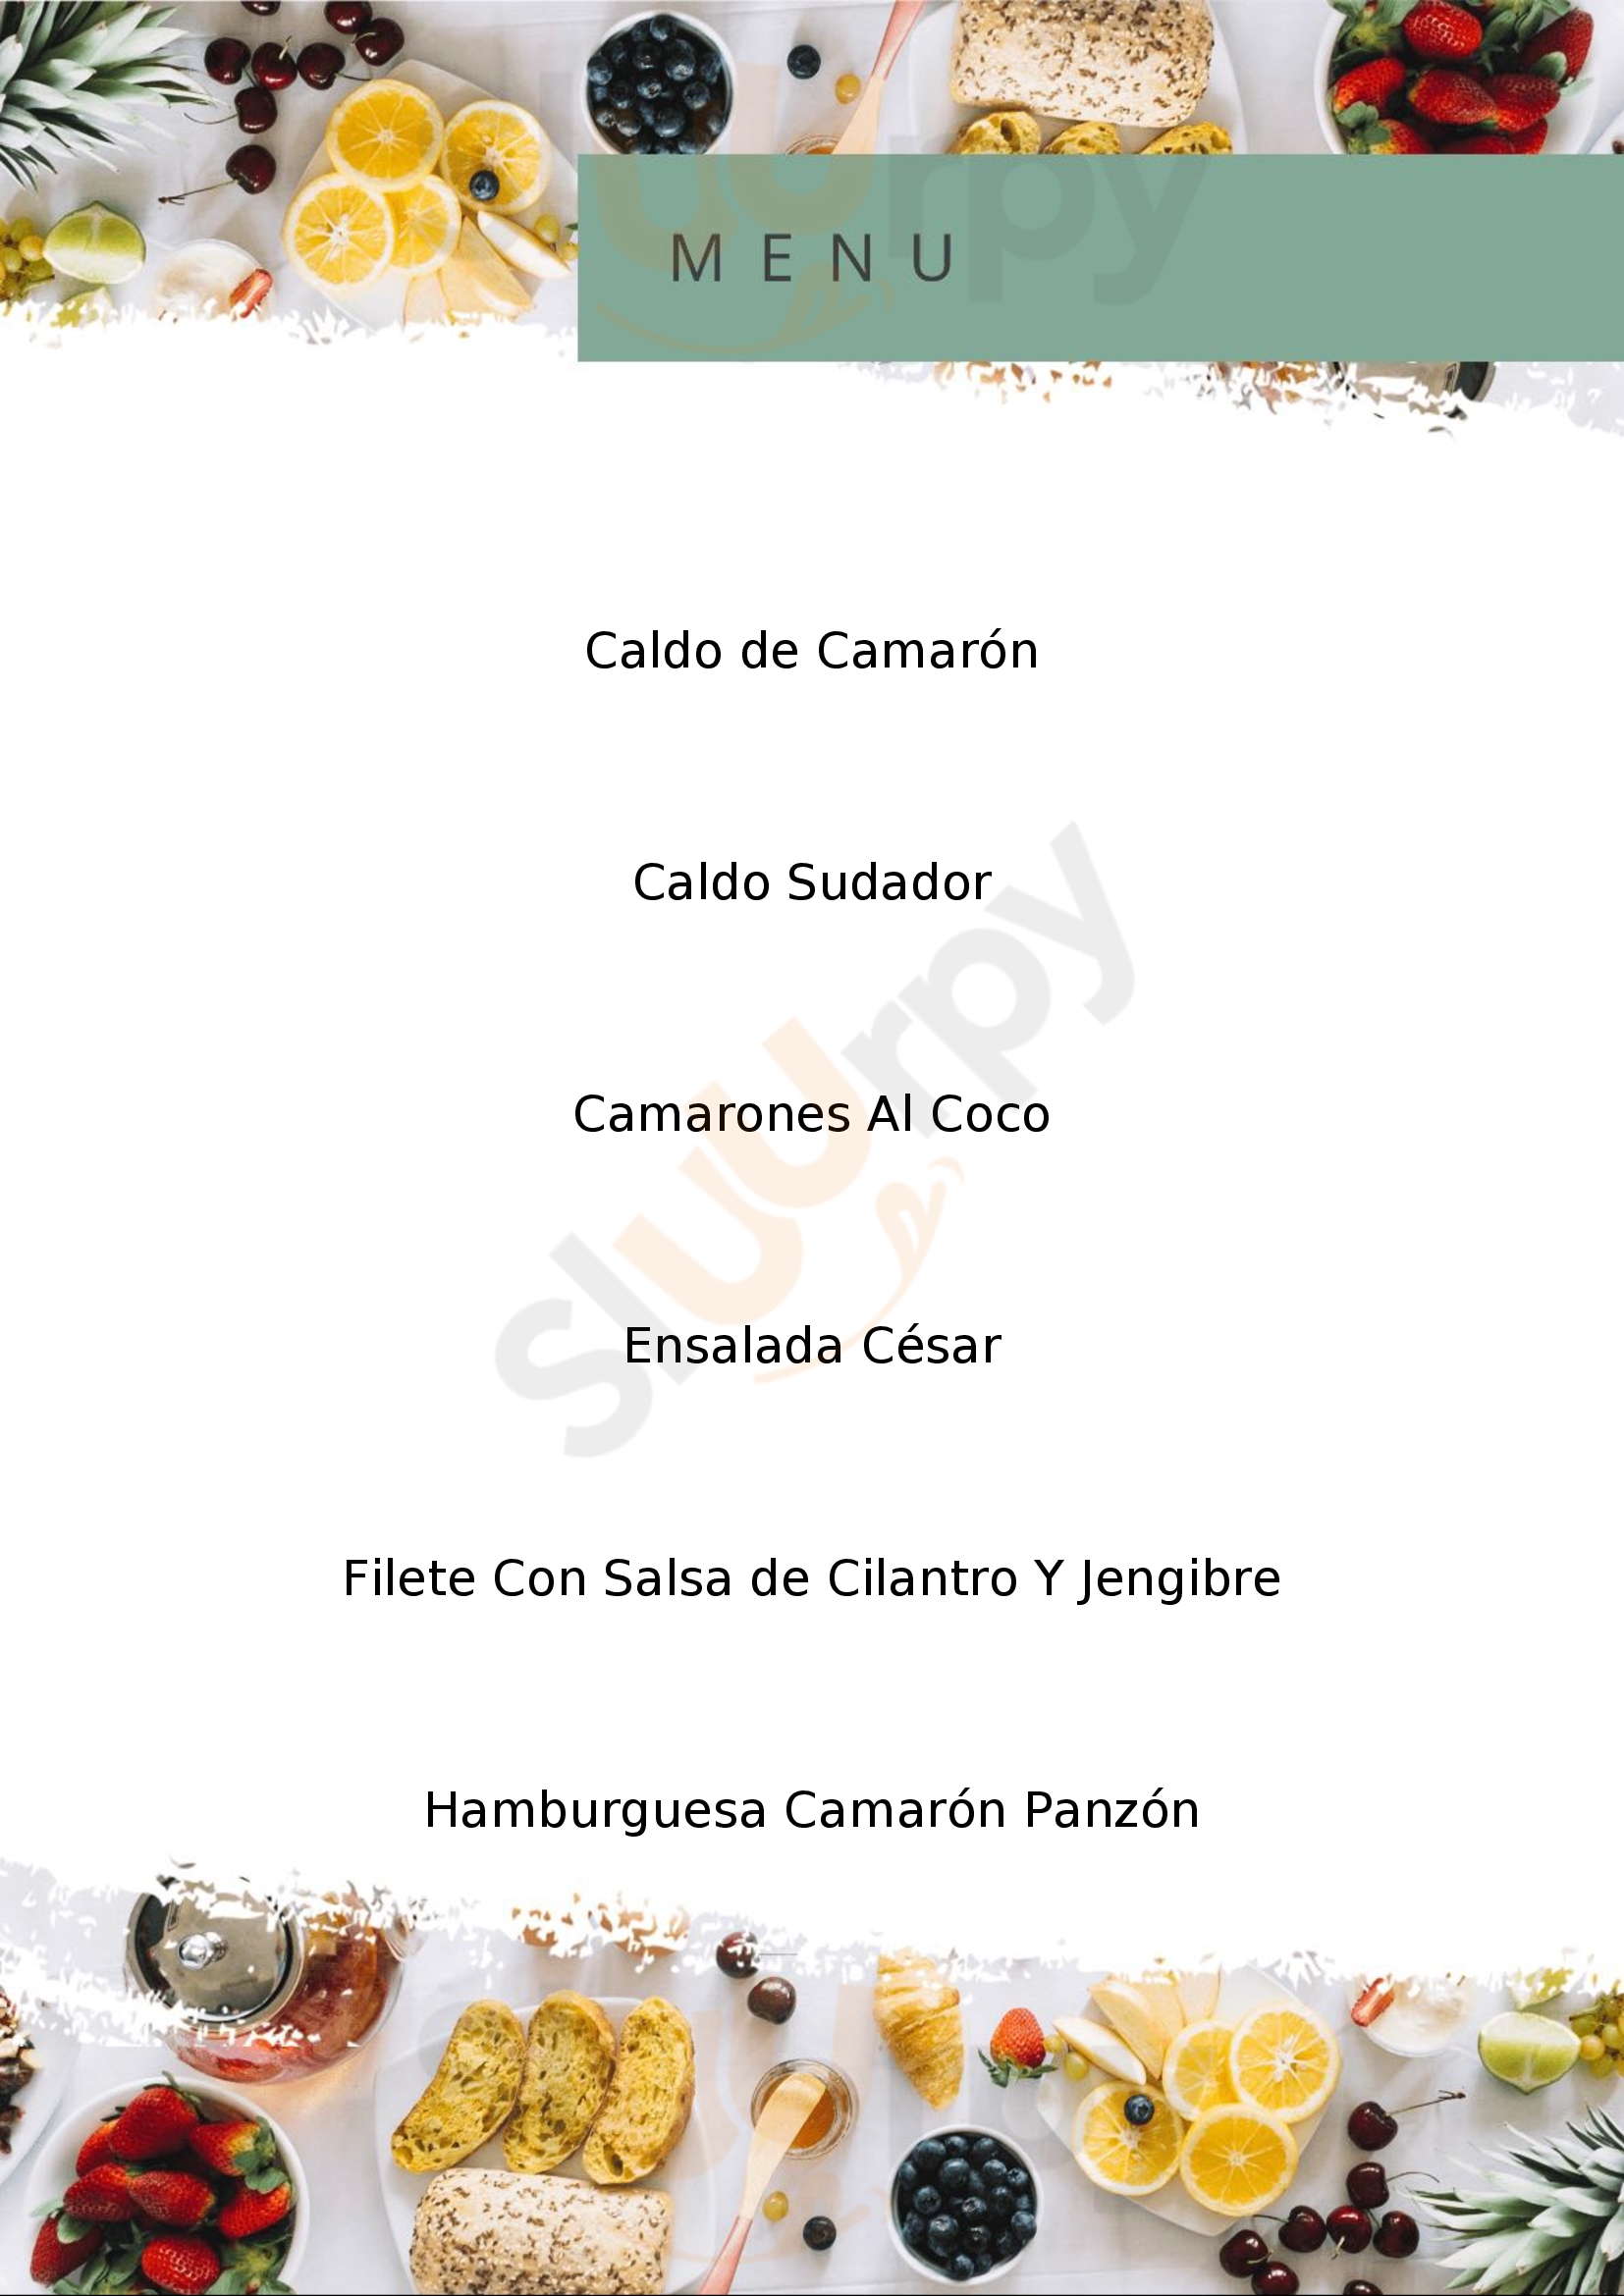 El Camarón Panzón Puebla Menu - 1